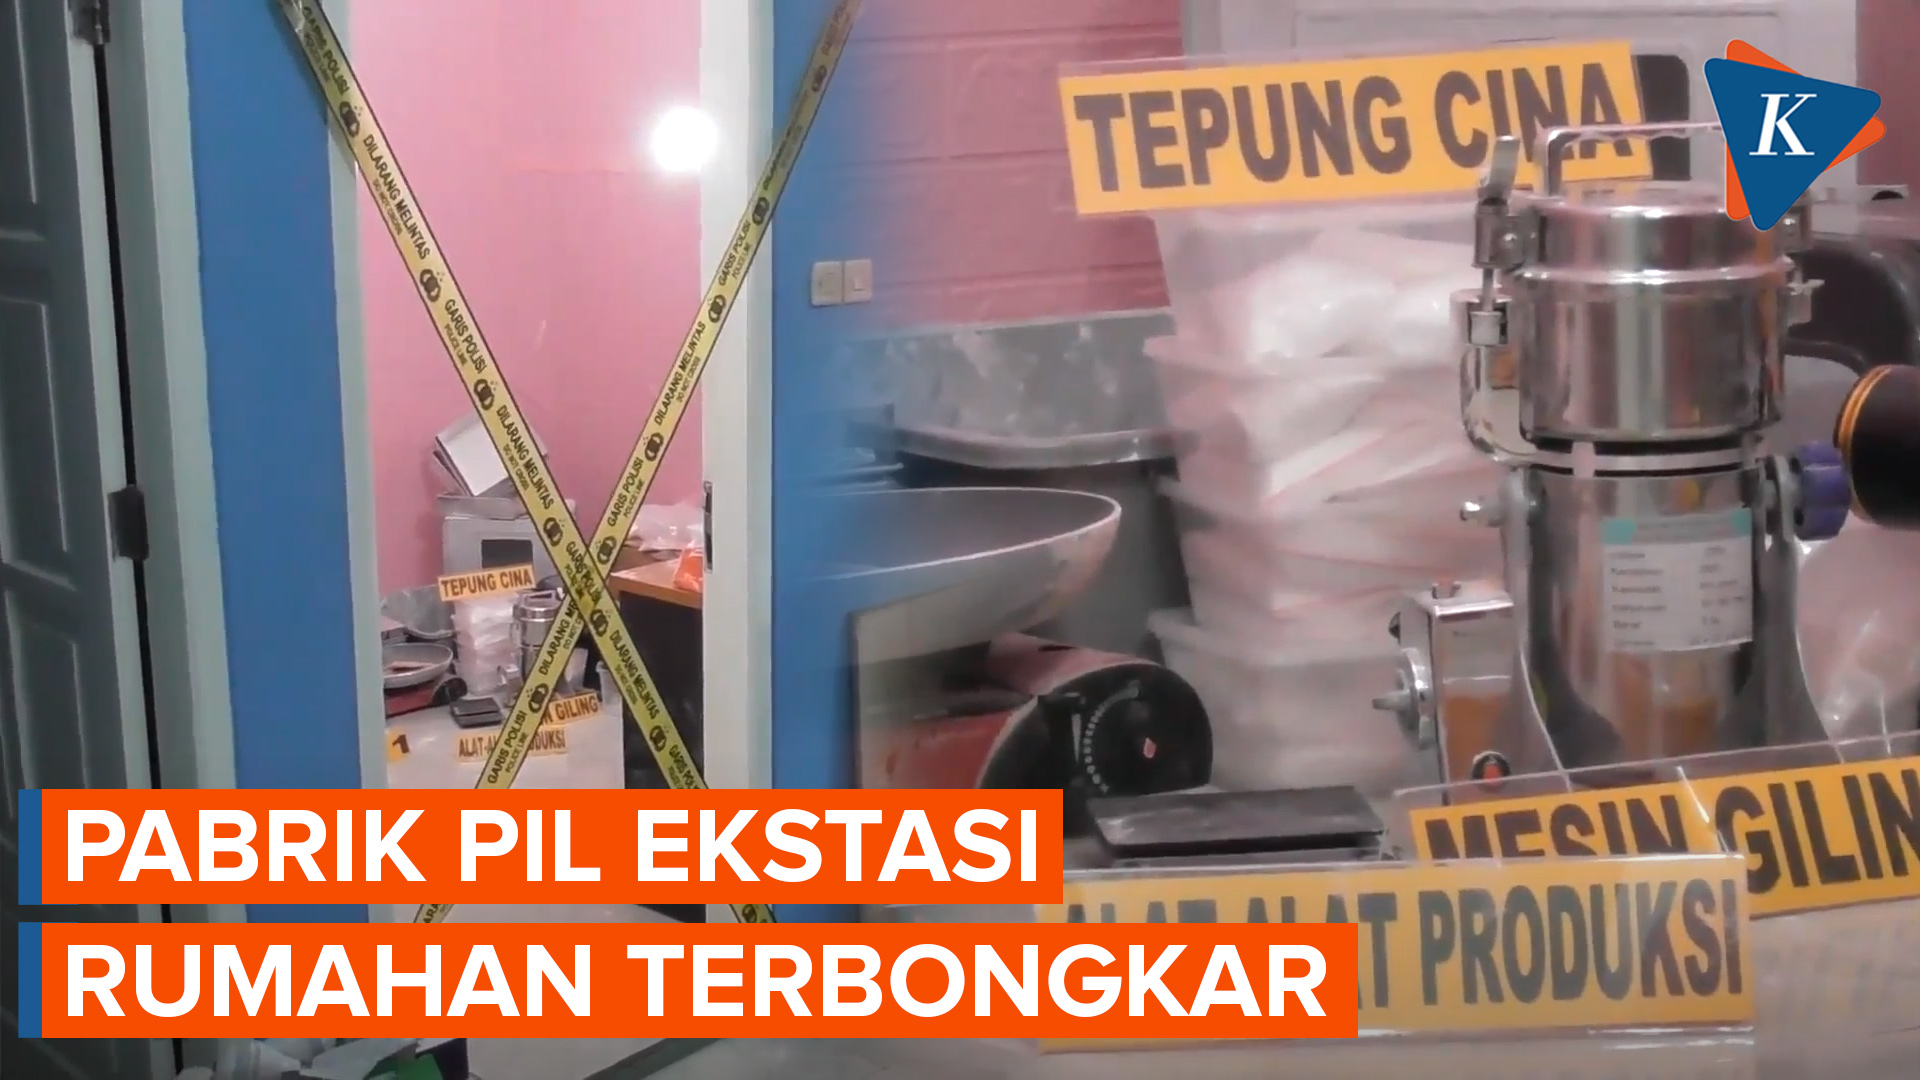 Polisi Bongkar Persembunyian Pabrik Pil Ekstasi di Semarang